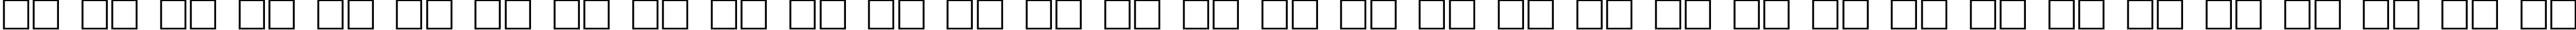 Пример написания русского алфавита шрифтом Zag